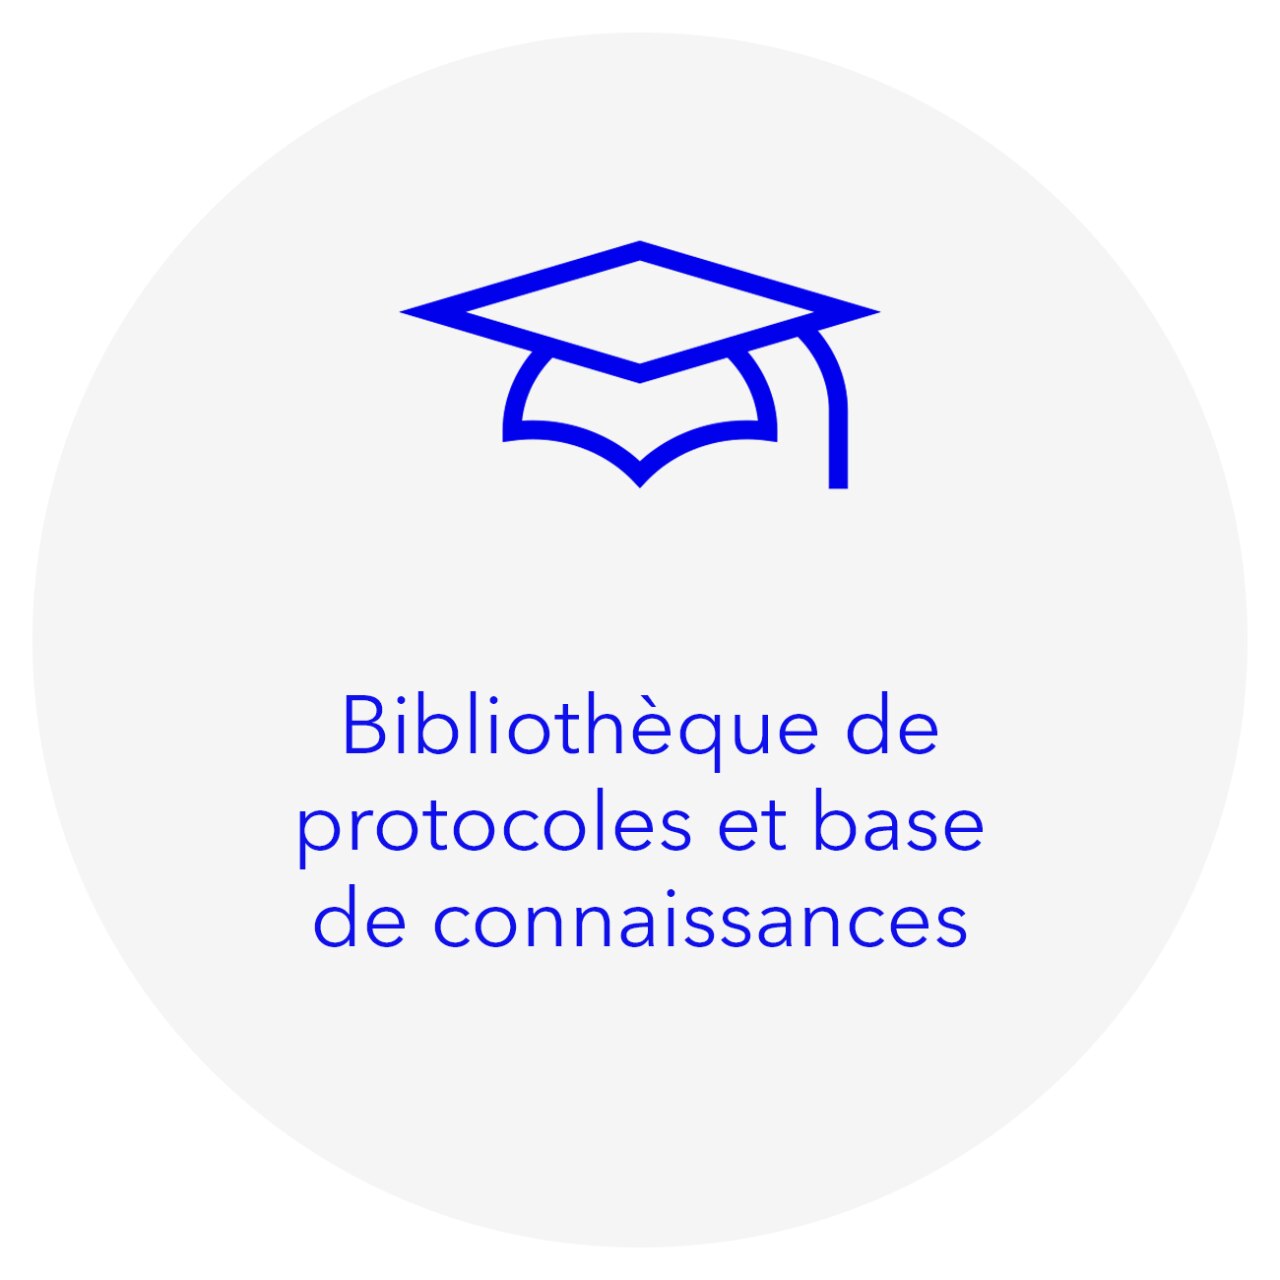 Bibliothèque de protocoles et base de connaissances